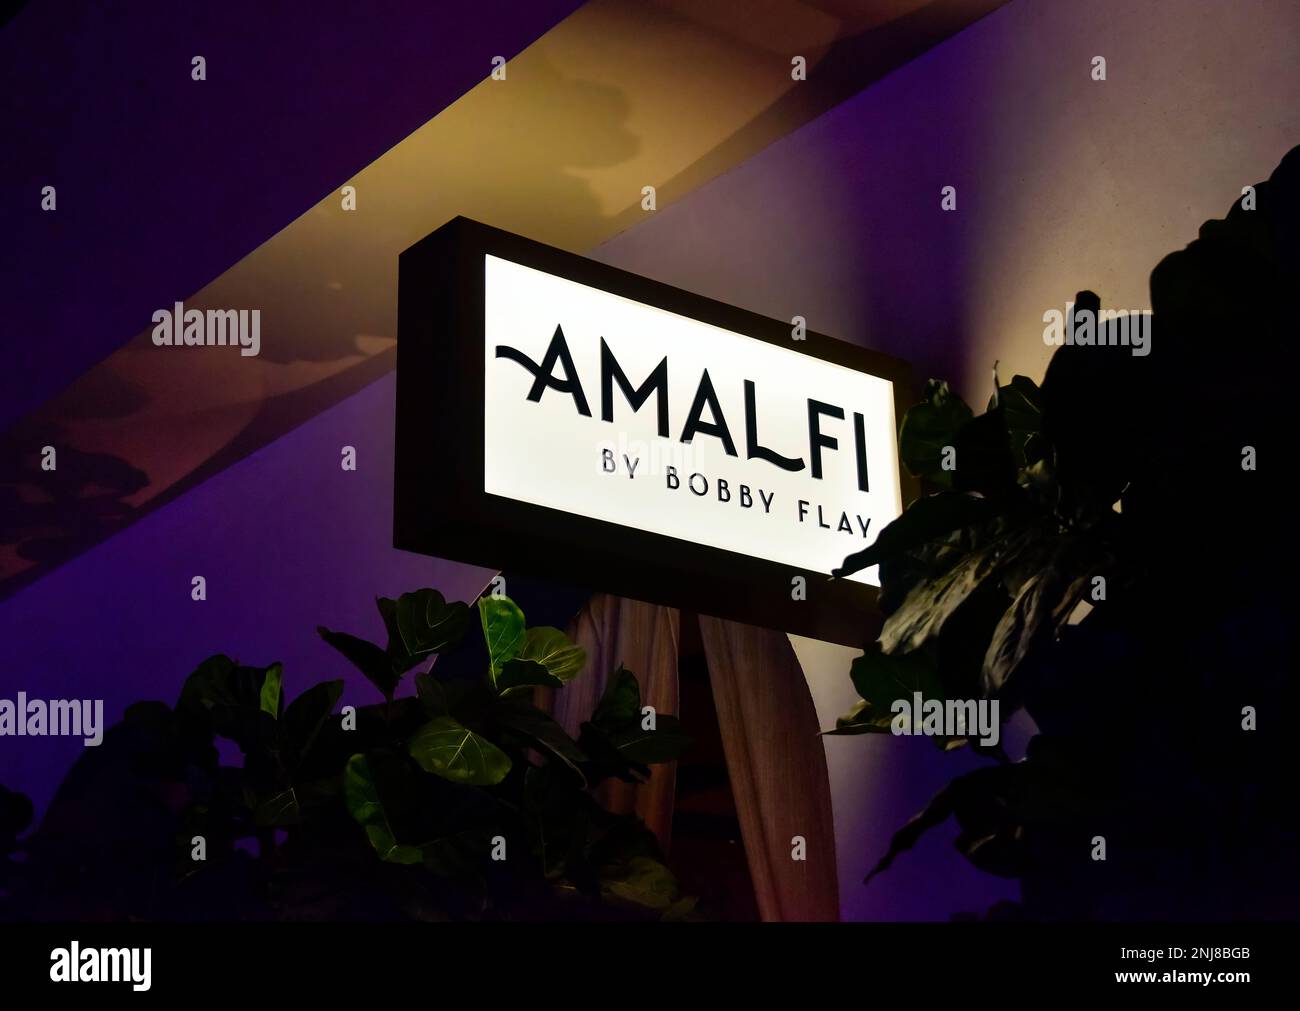 Das vordere Schild für Bobby Flay's Restaurant, Amalfi, in Caesars Palace am Las Vegas Strip Stockfoto